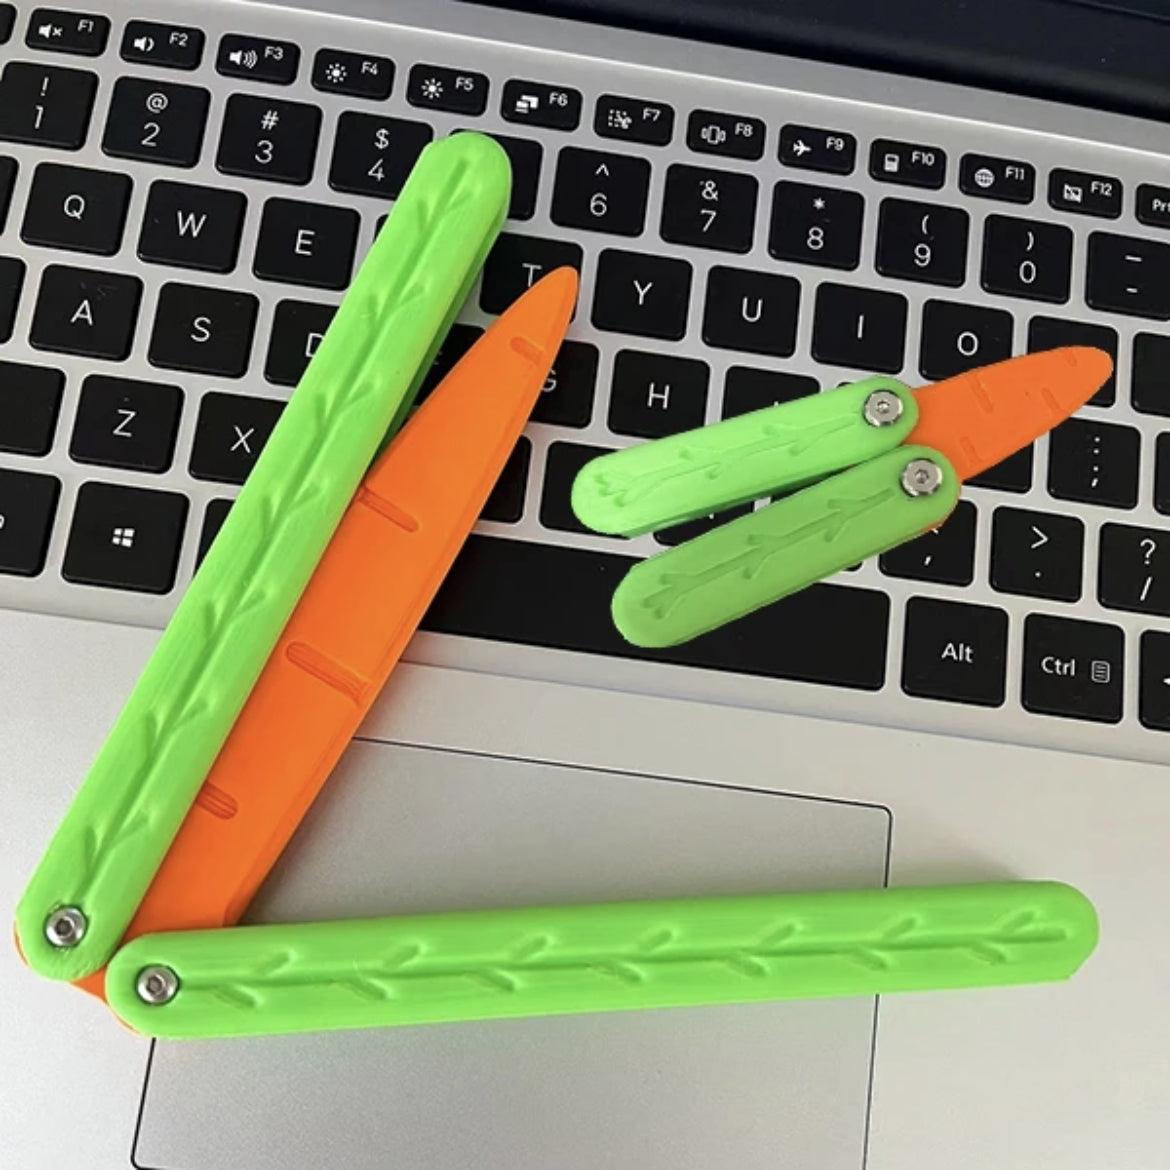 3D Gravity Knife Carrot Butterfly Knife Fidget Toy Noctilucent - PANSEKtoy